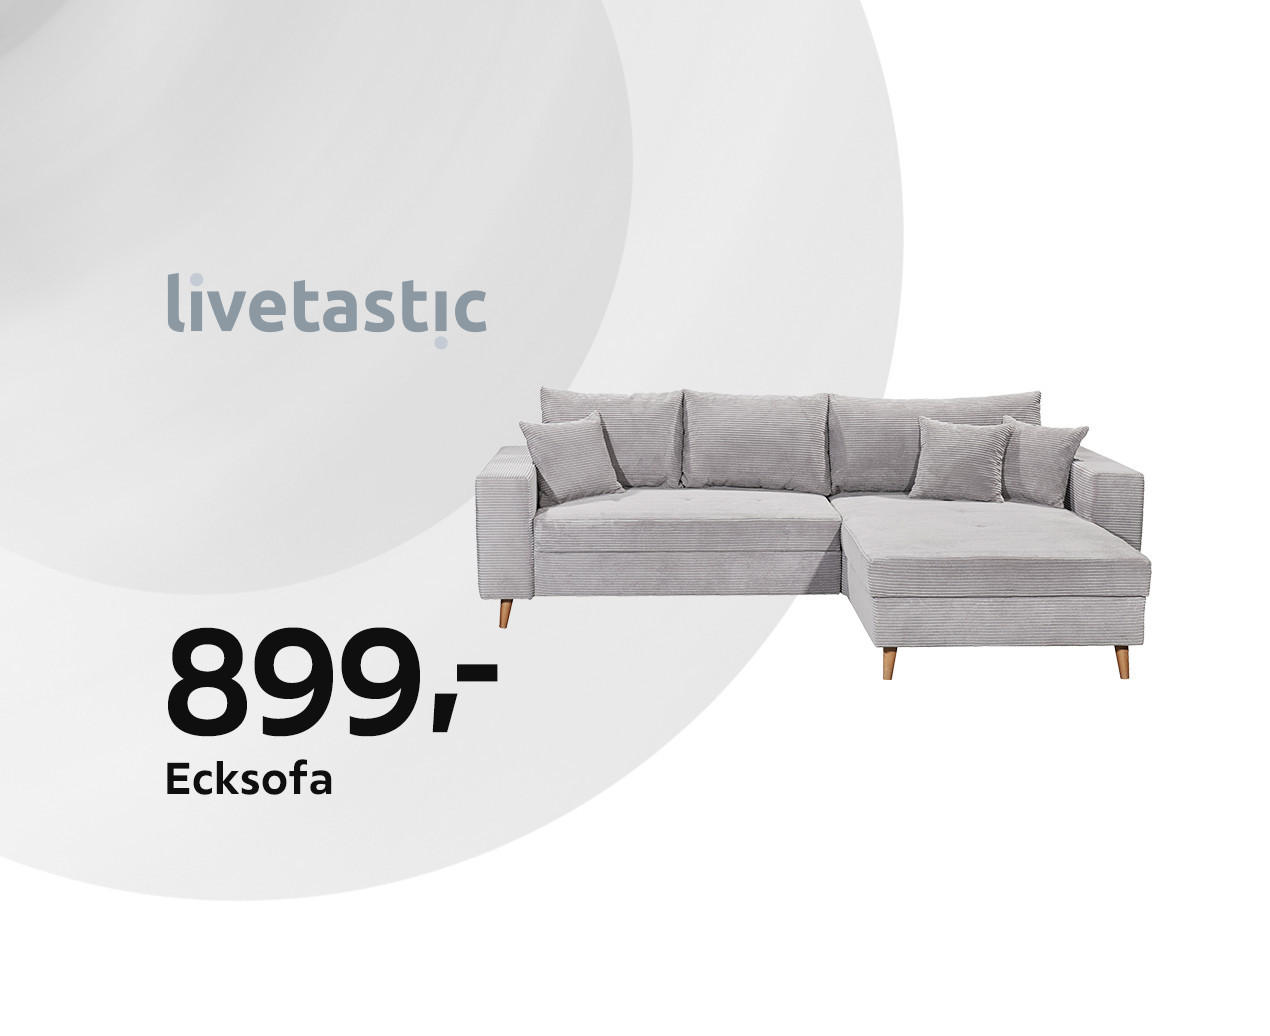 Ecksofa kaufen online